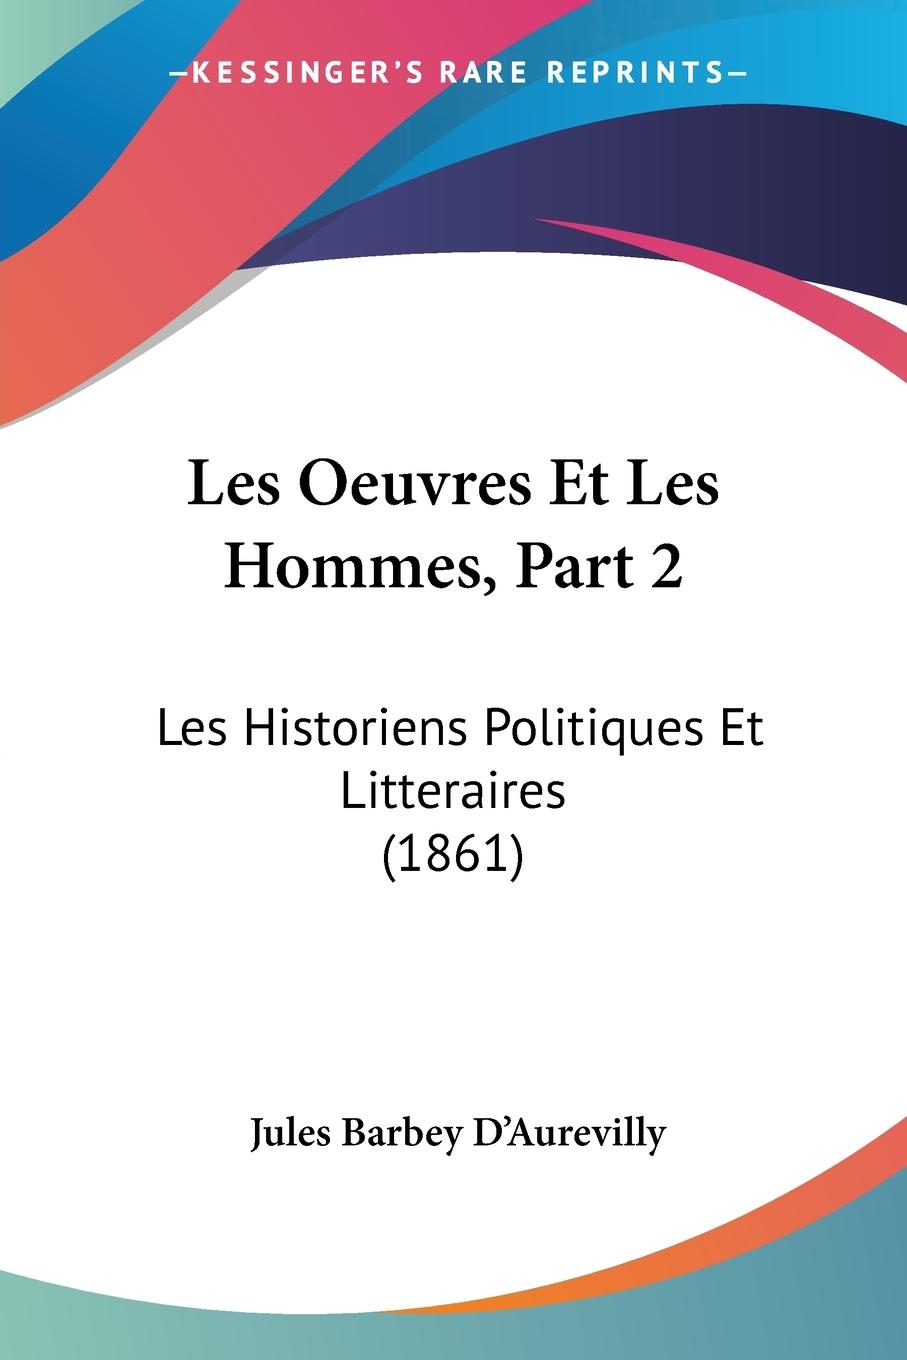 Les Oeuvres Et Les Hommes, Part 2 - D Aurevilly, Jules Barbey